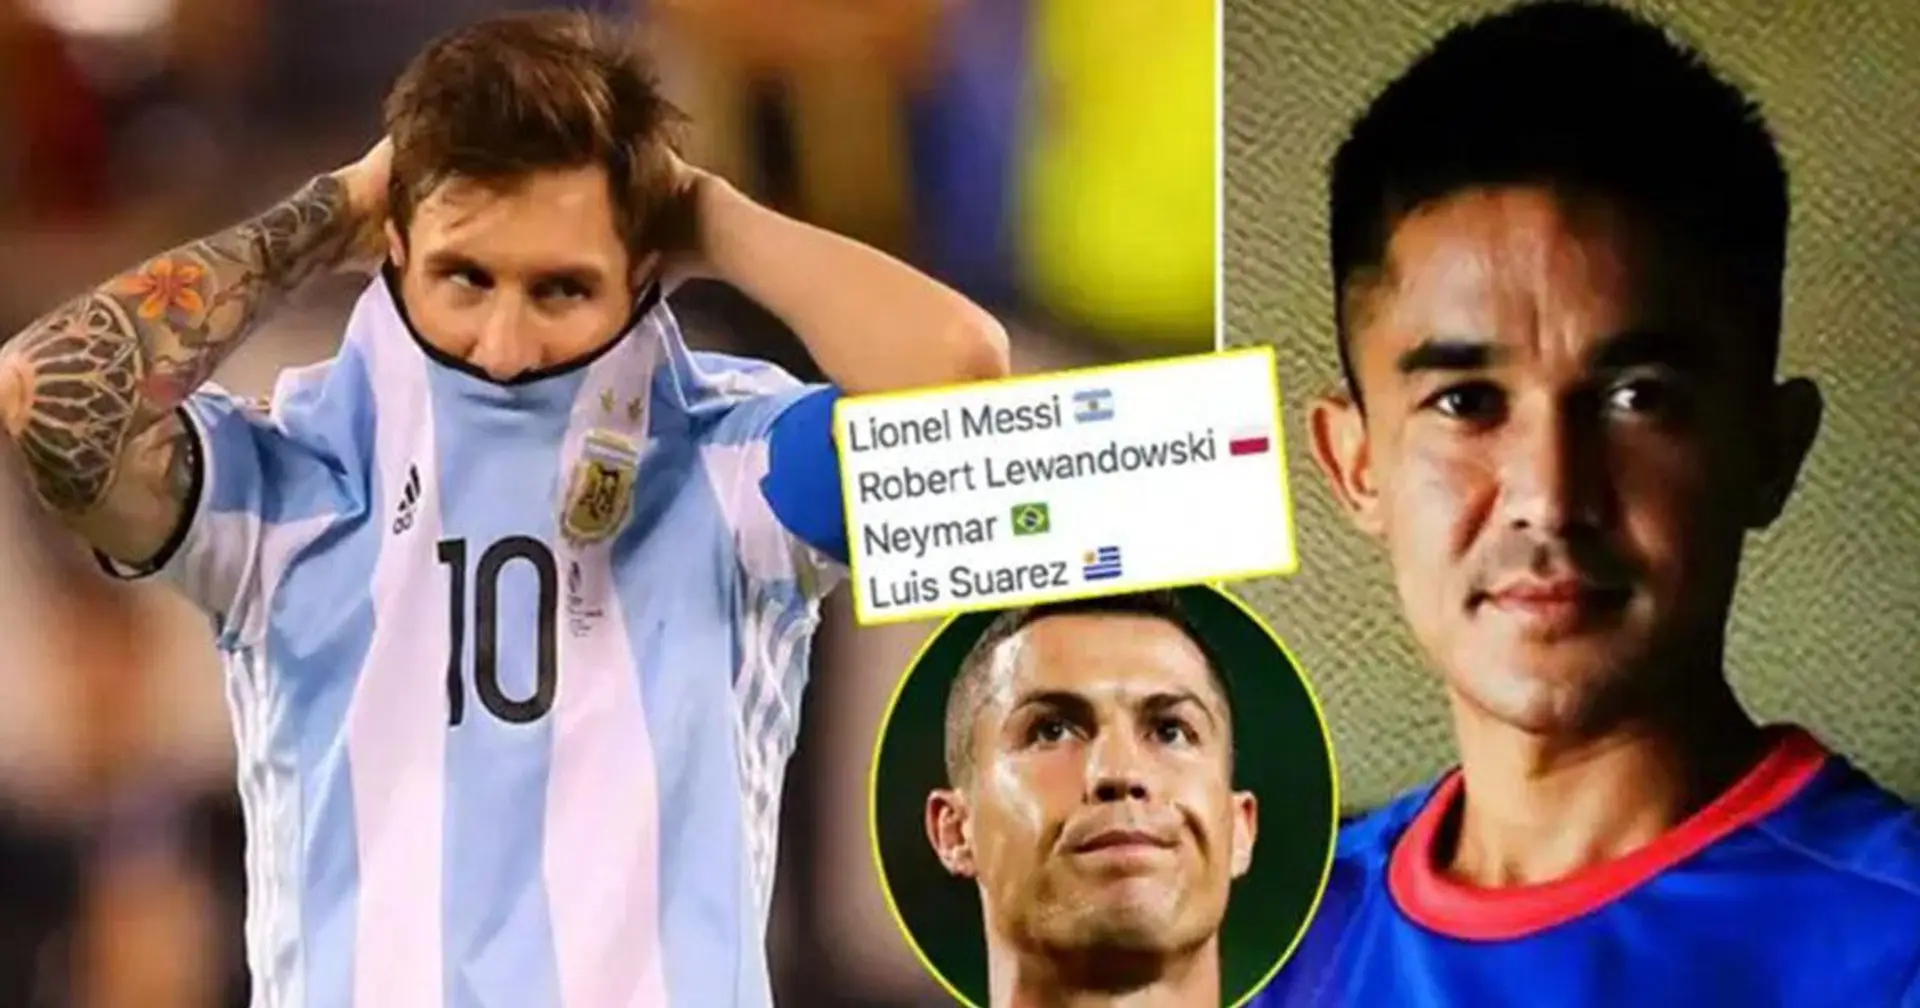 Messis großer internationaler Rekord von einem 200.000-Euro-Stürmer geknackt, Cristiano weit voraus